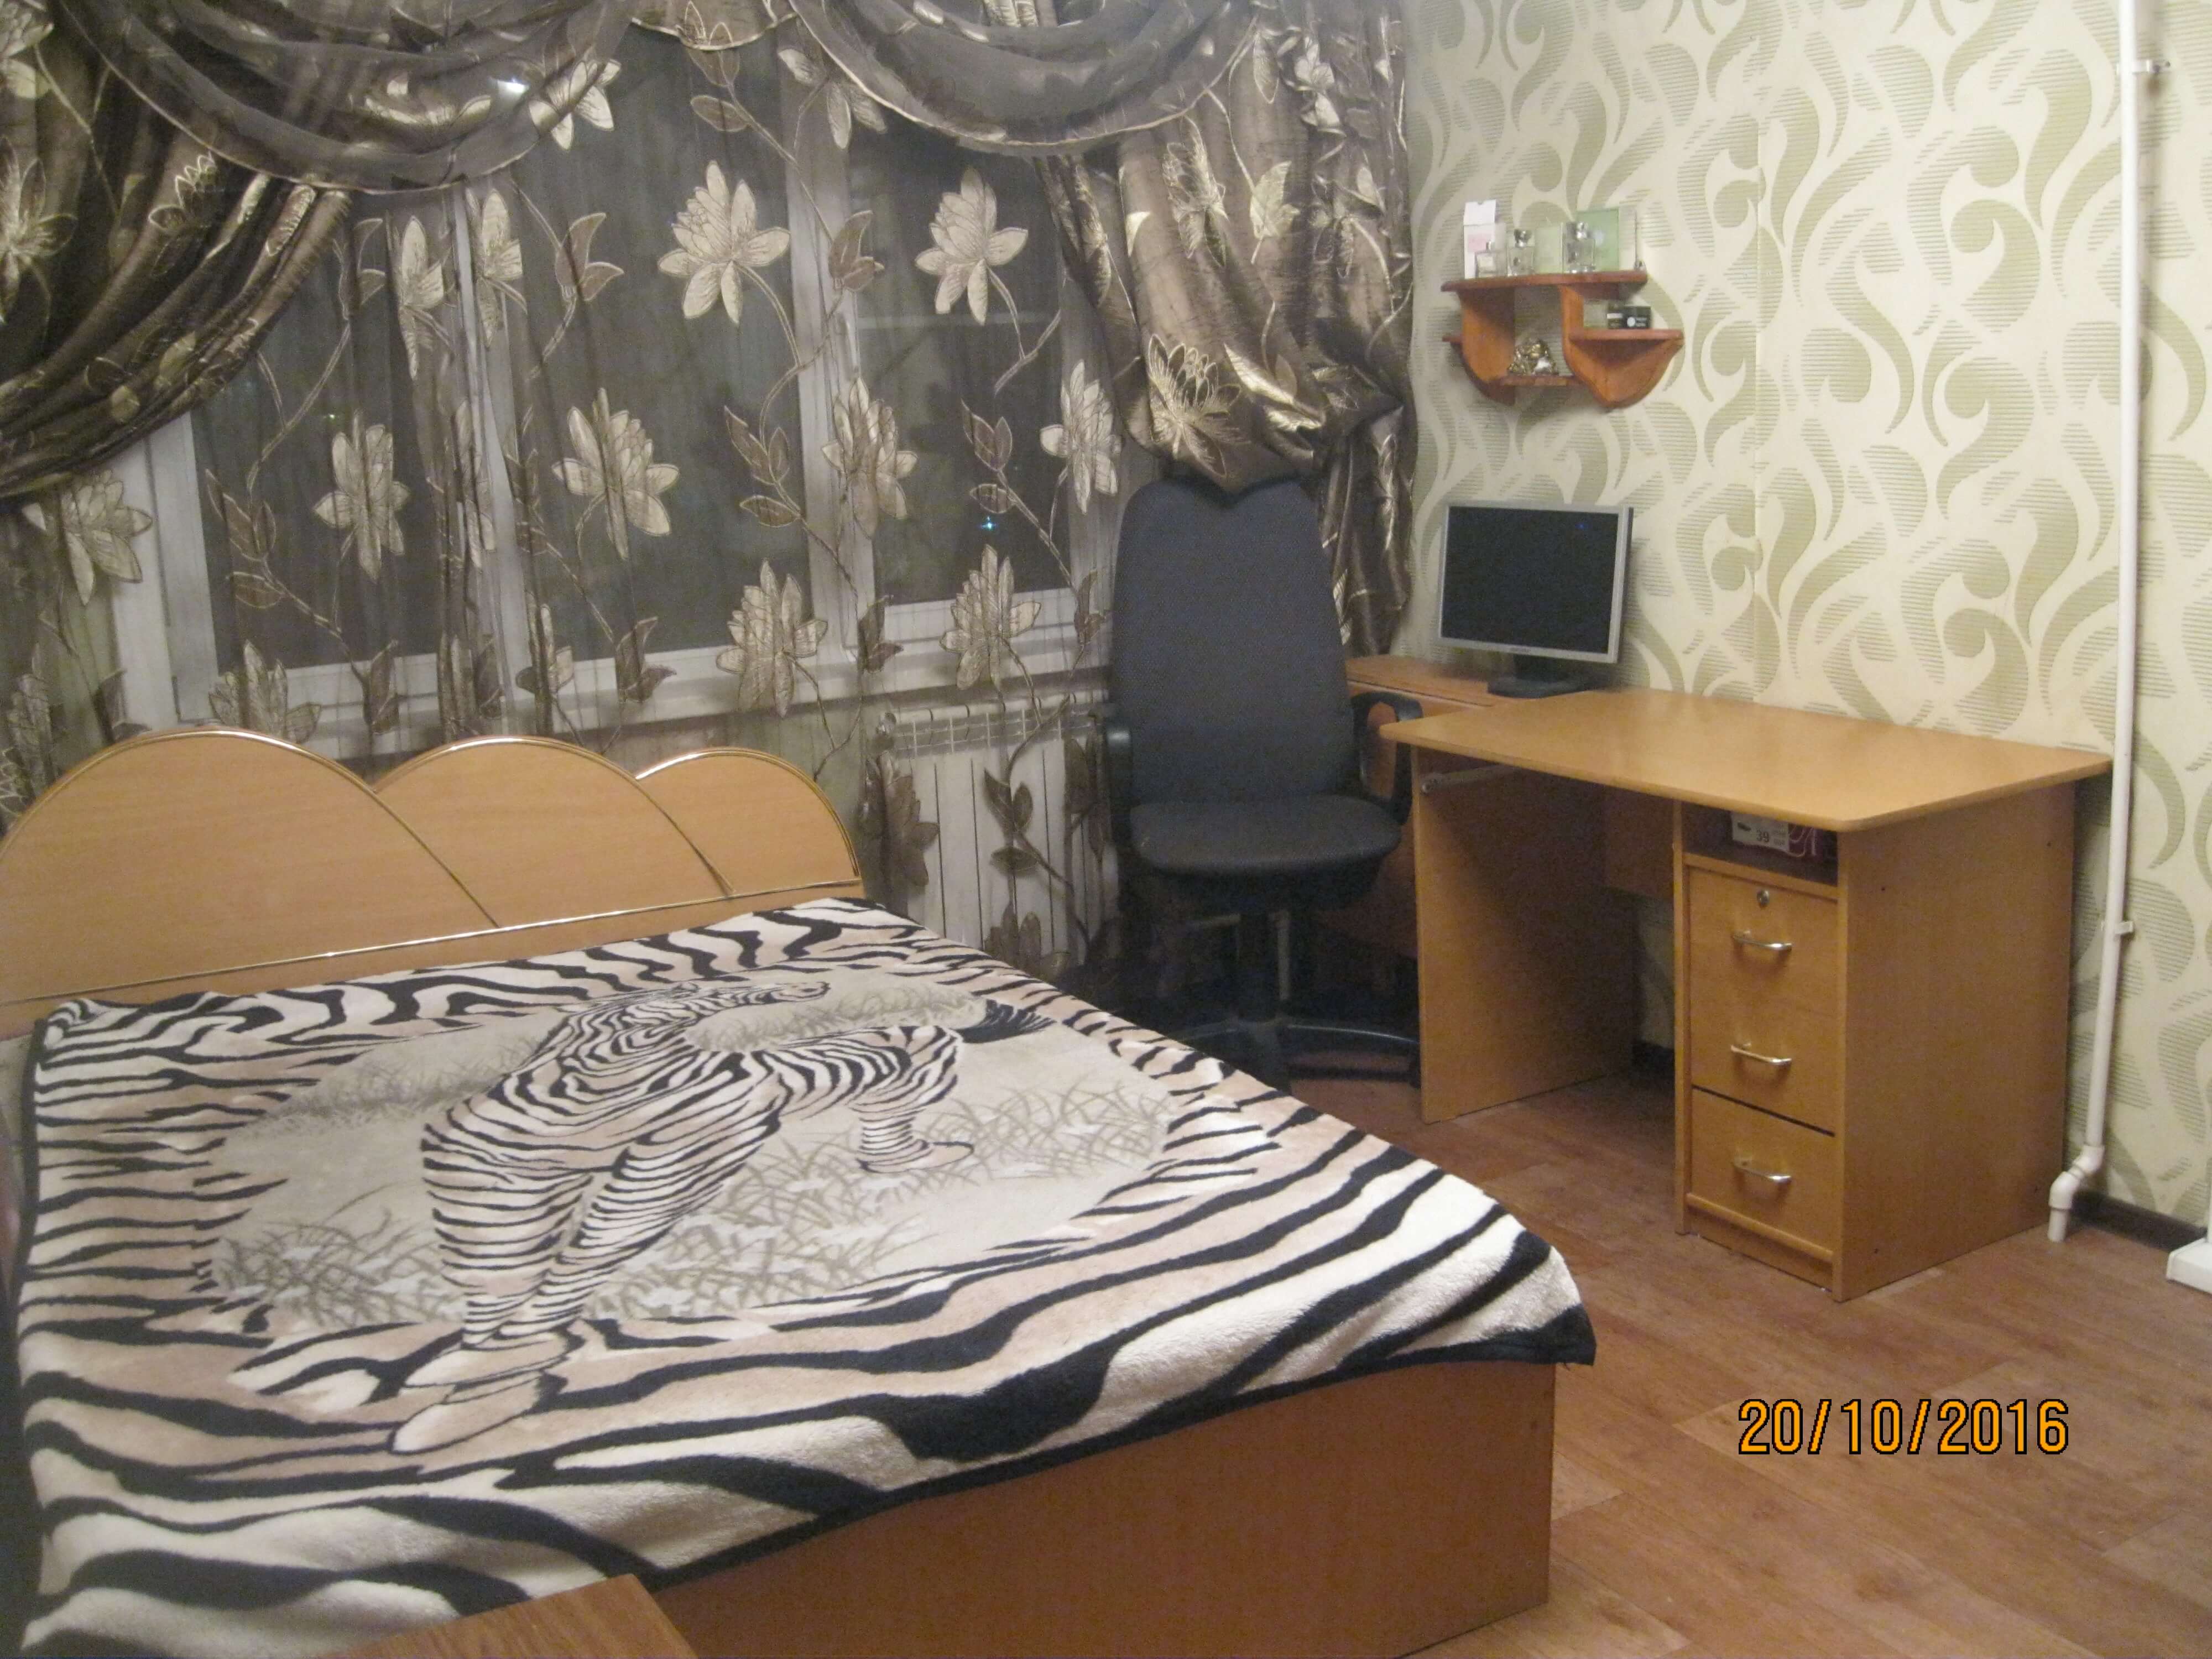 Однокомнатная квартира на 4 человека, 38кв.м, ул.Владивостокская 35